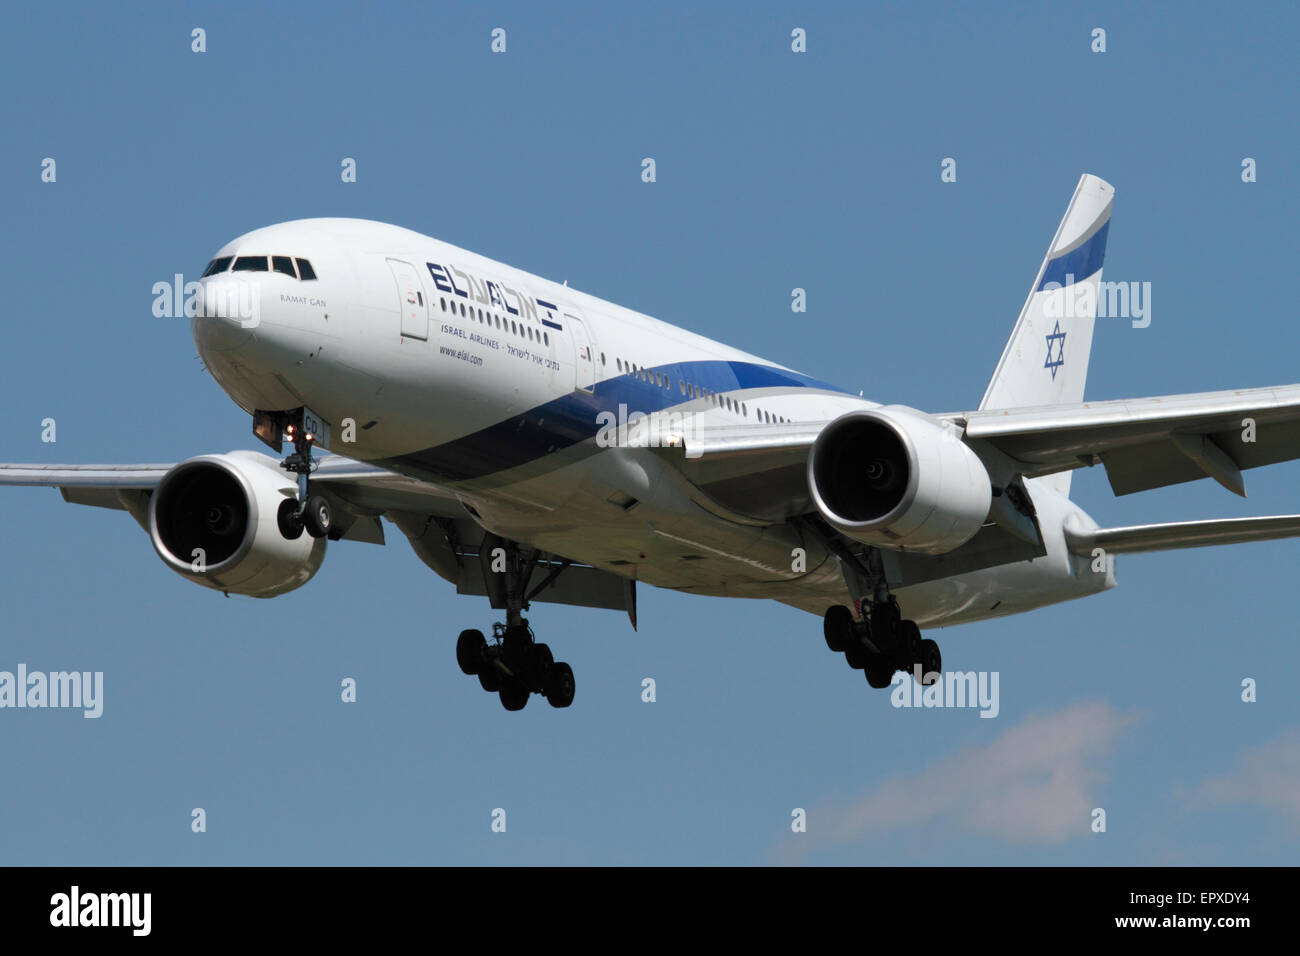 L'aviation civile. El Al Israel Airlines Boeing 777-200ER avion gros-porteurs en approche. Libre Vue de face. Banque D'Images